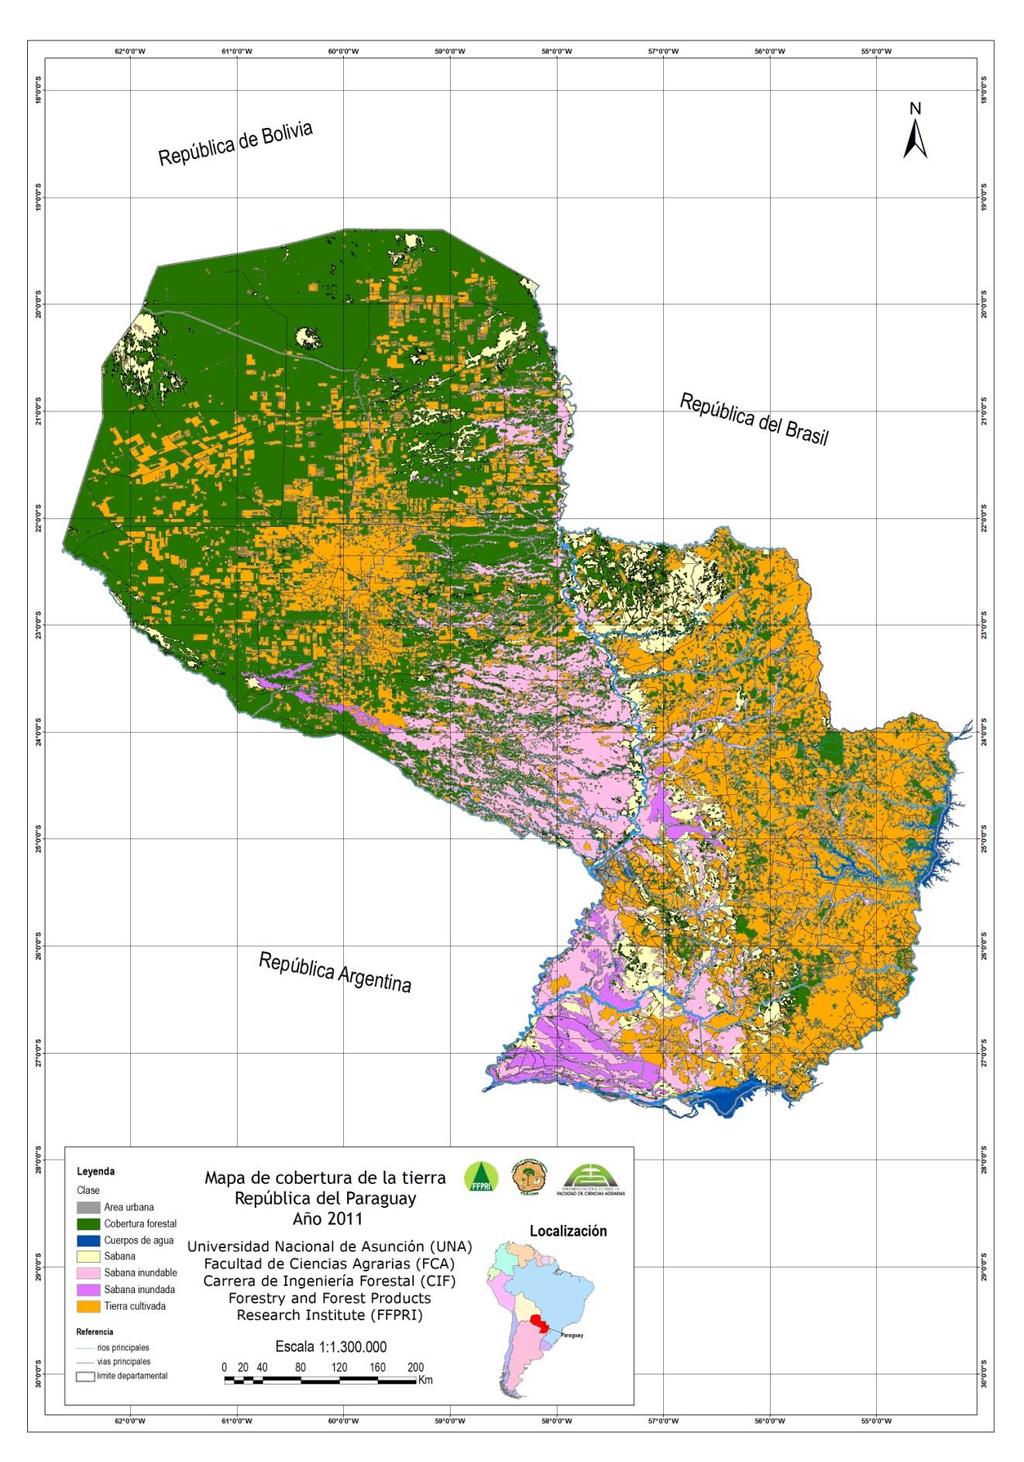 Seguidamente, se observa el Mapa de cobertura de la tierra del Paraguay año 2011 Figura 8.